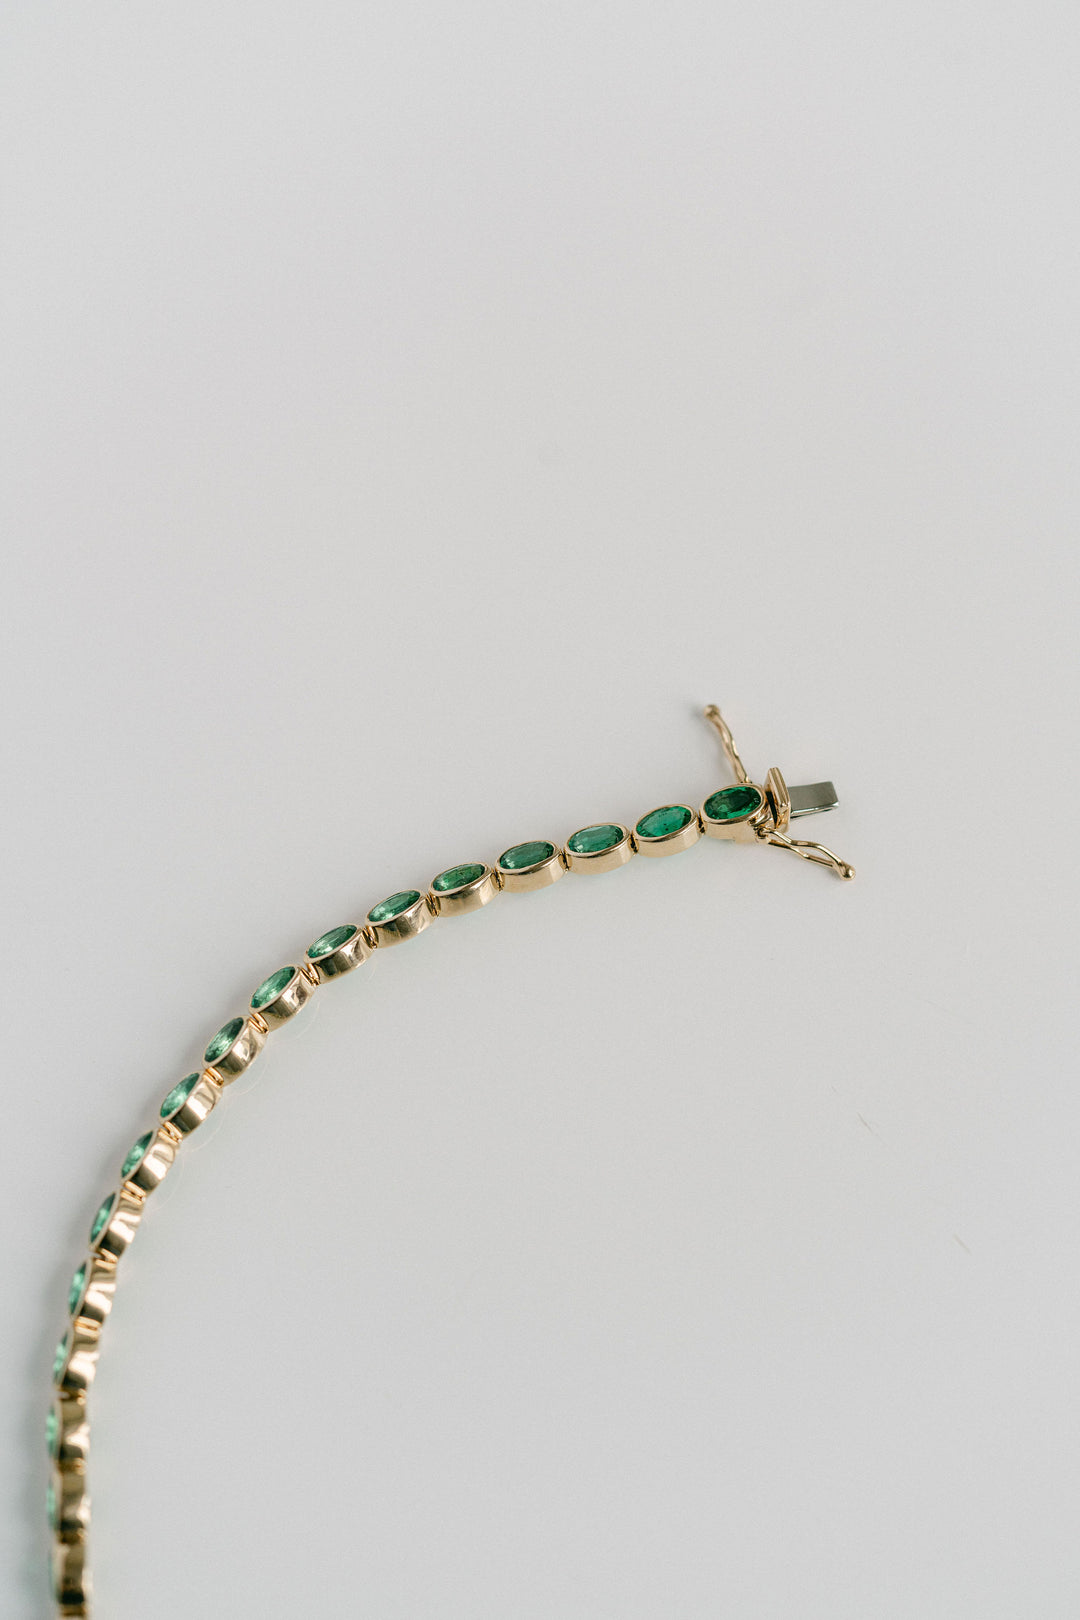 Oval Colombian Emerald Bezel Tennis Bracelet, 14k Yellow Gold